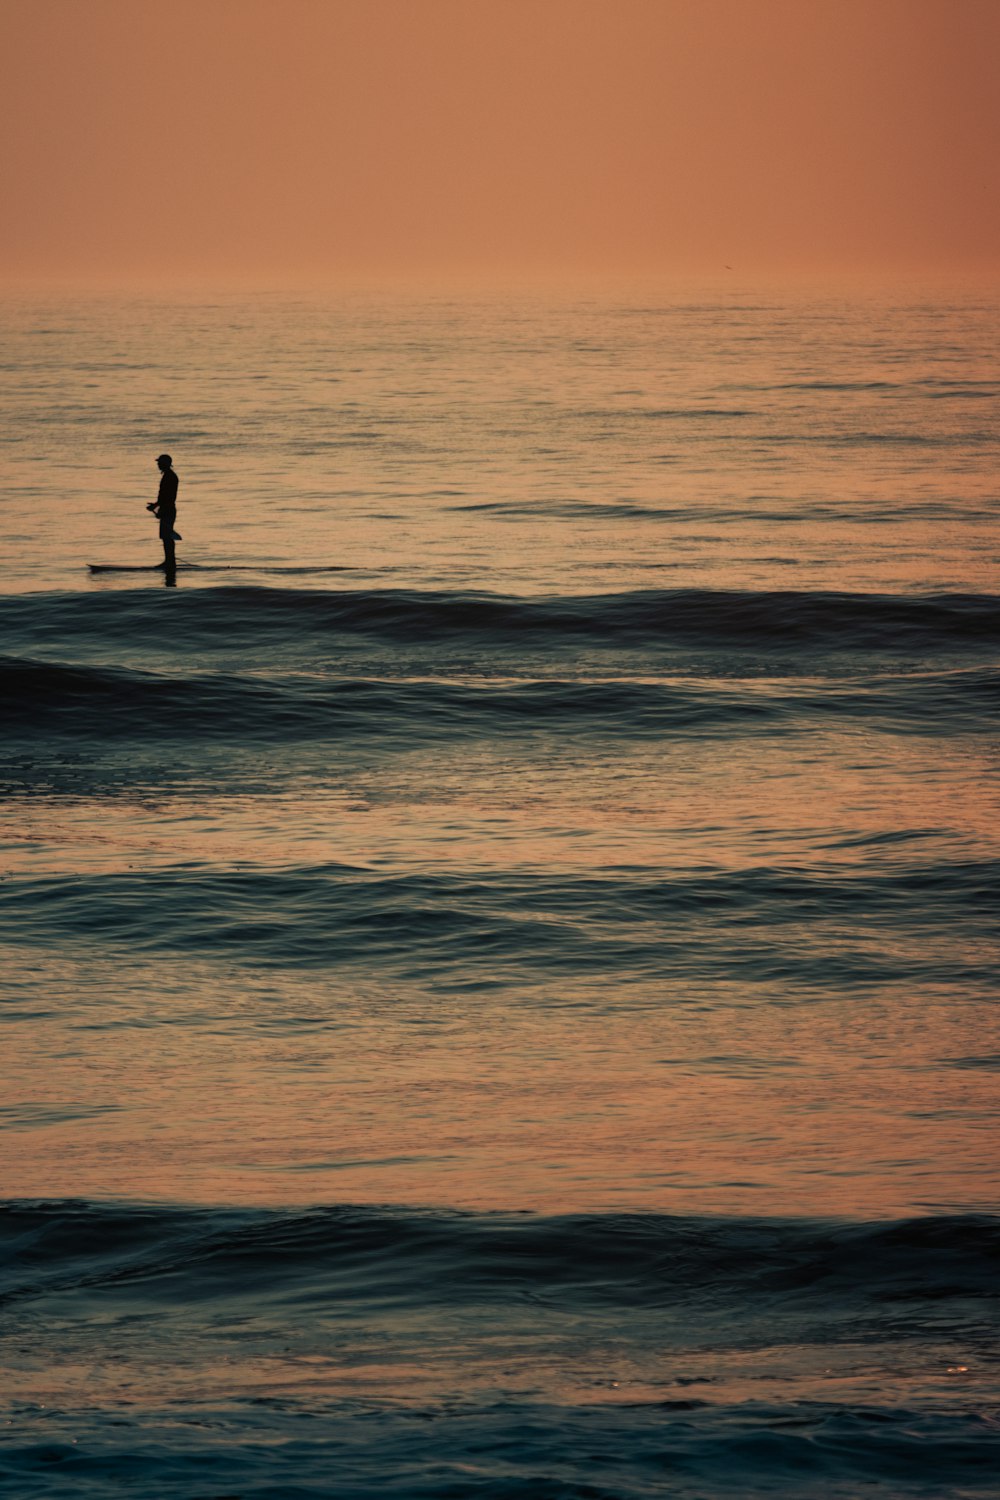 Una persona in piedi su una tavola da surf nell'oceano